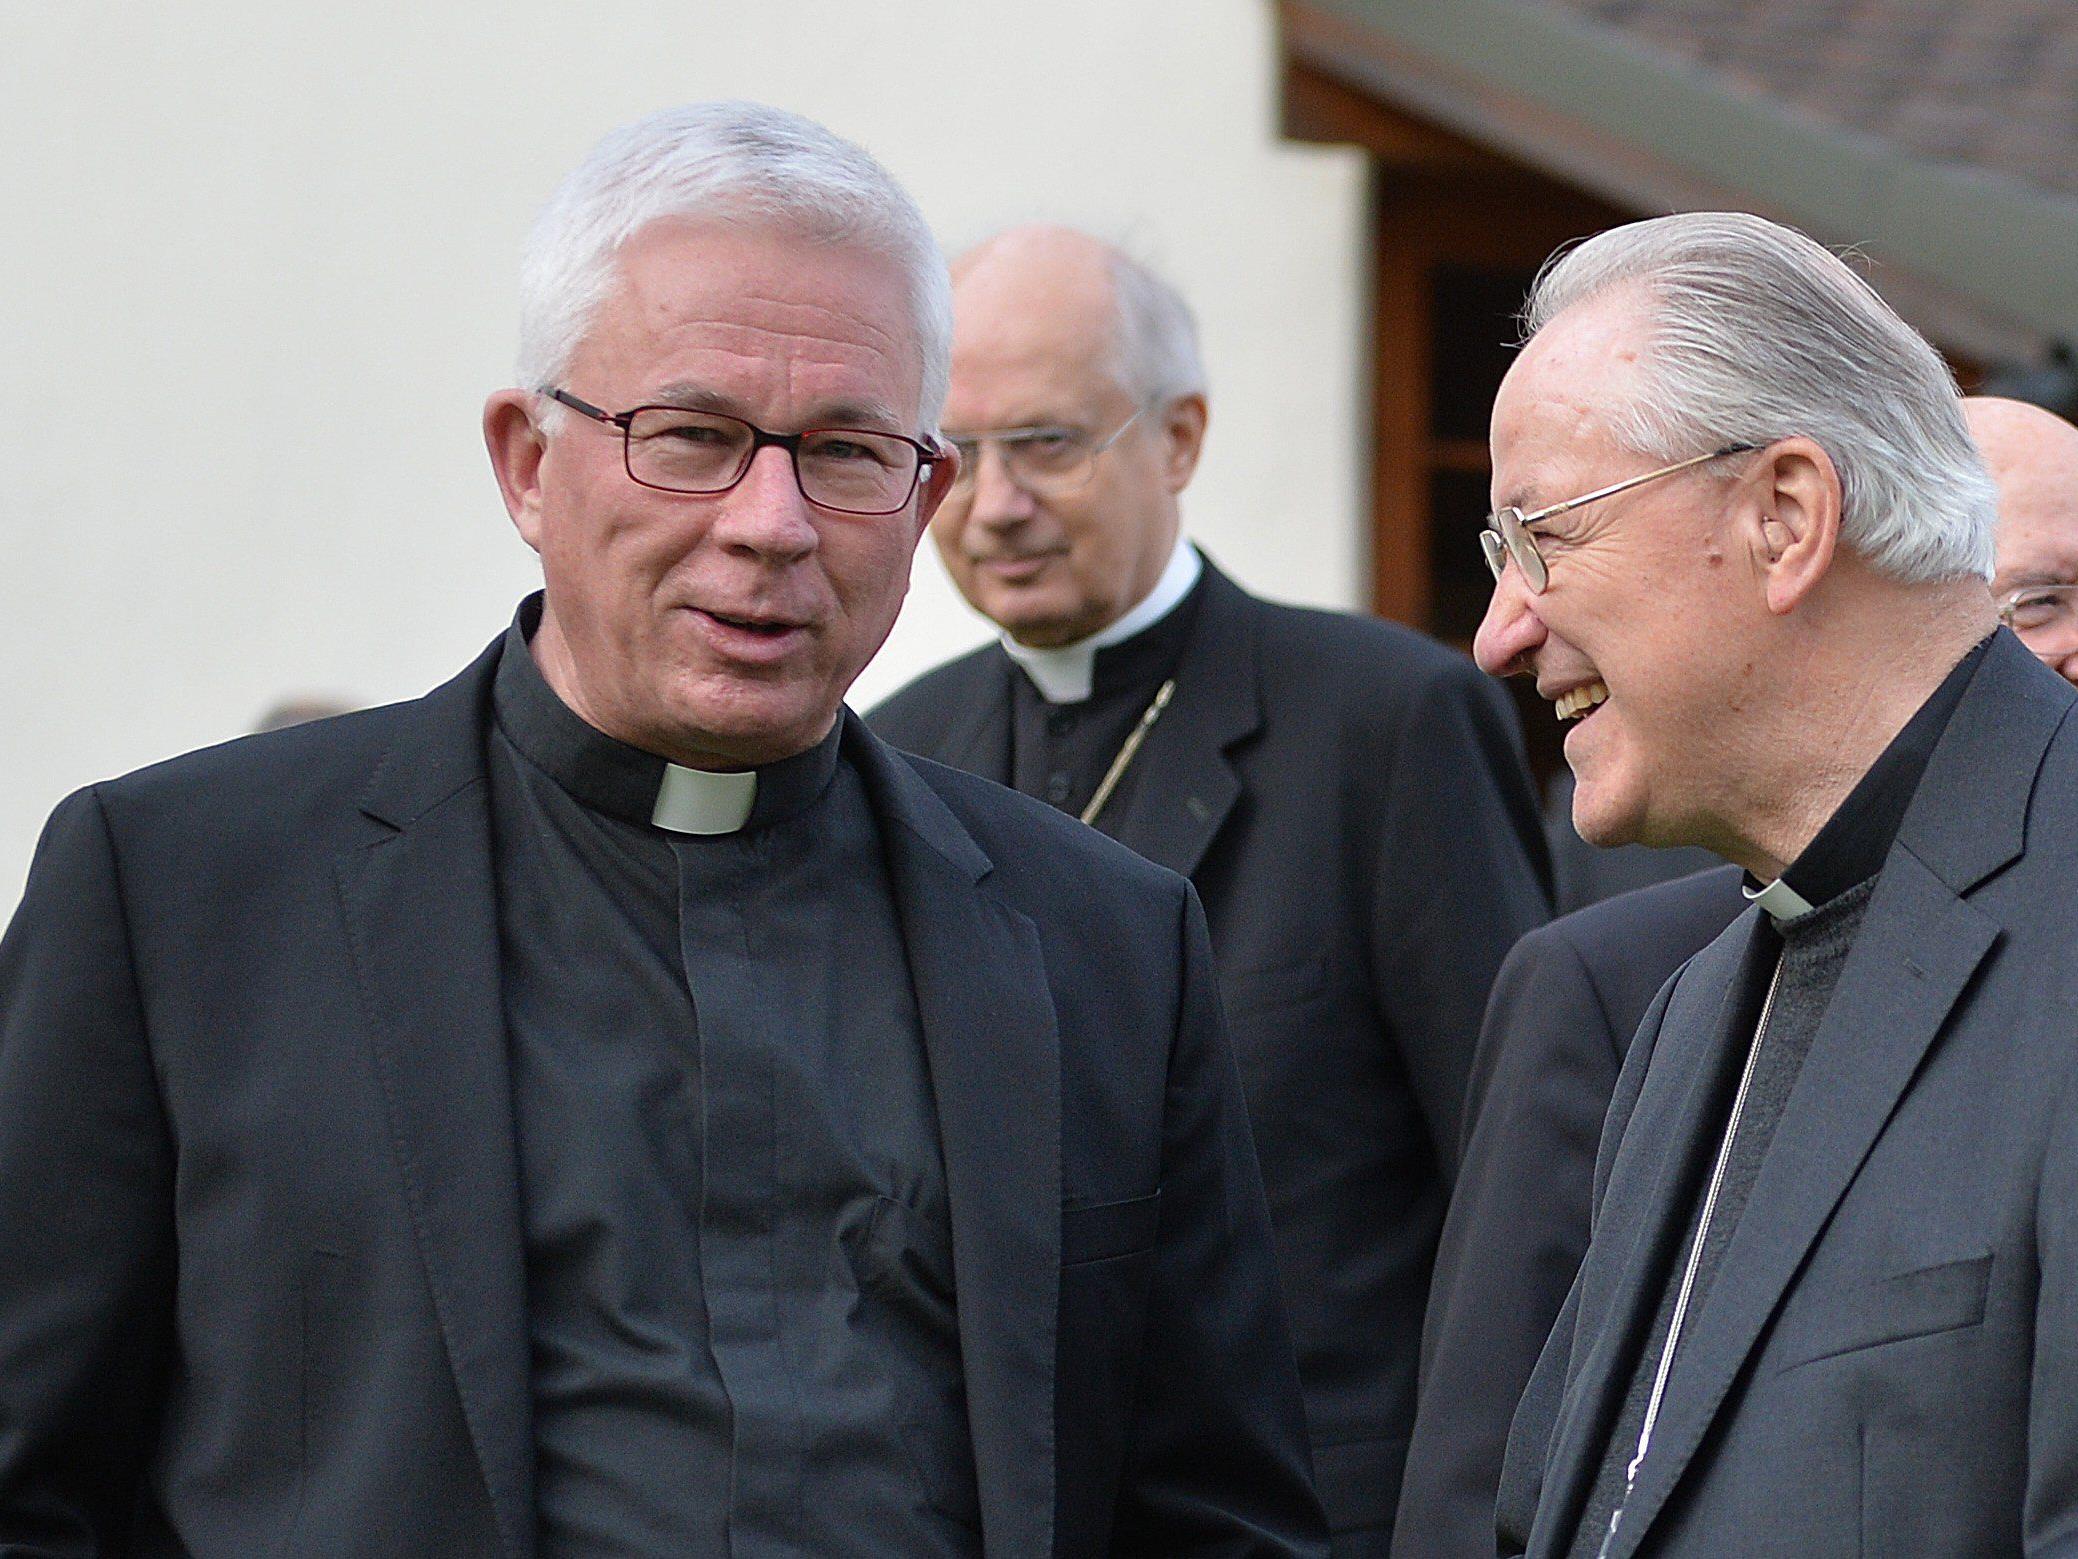 Franz Lackner ist offiziell noch nicht als Salzburger Erzbischof bestätigt.